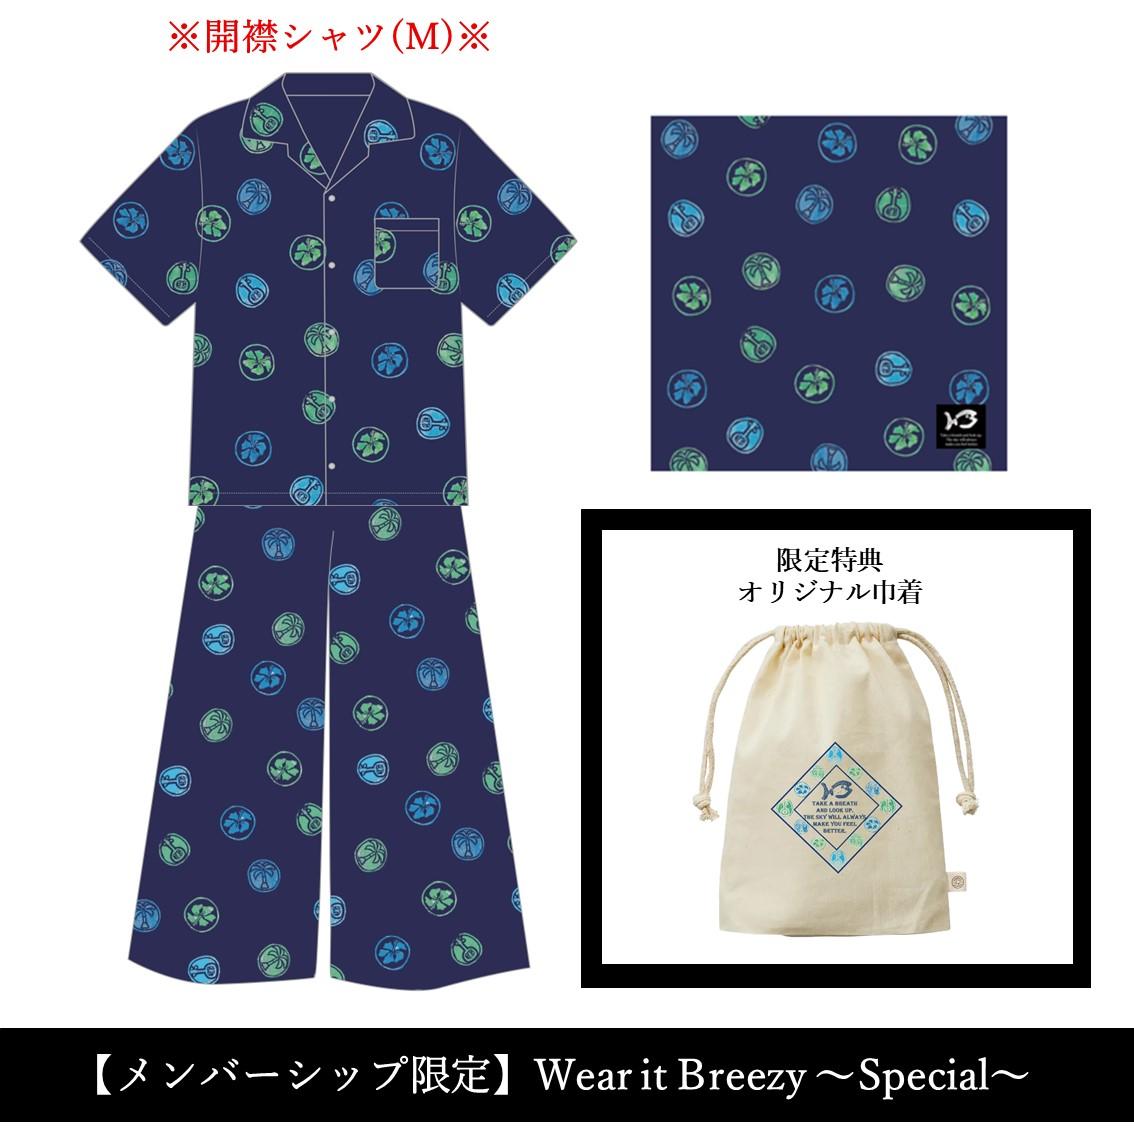 【メンバーシップ限定】Wear it Breezy ～Special～(シャツM)